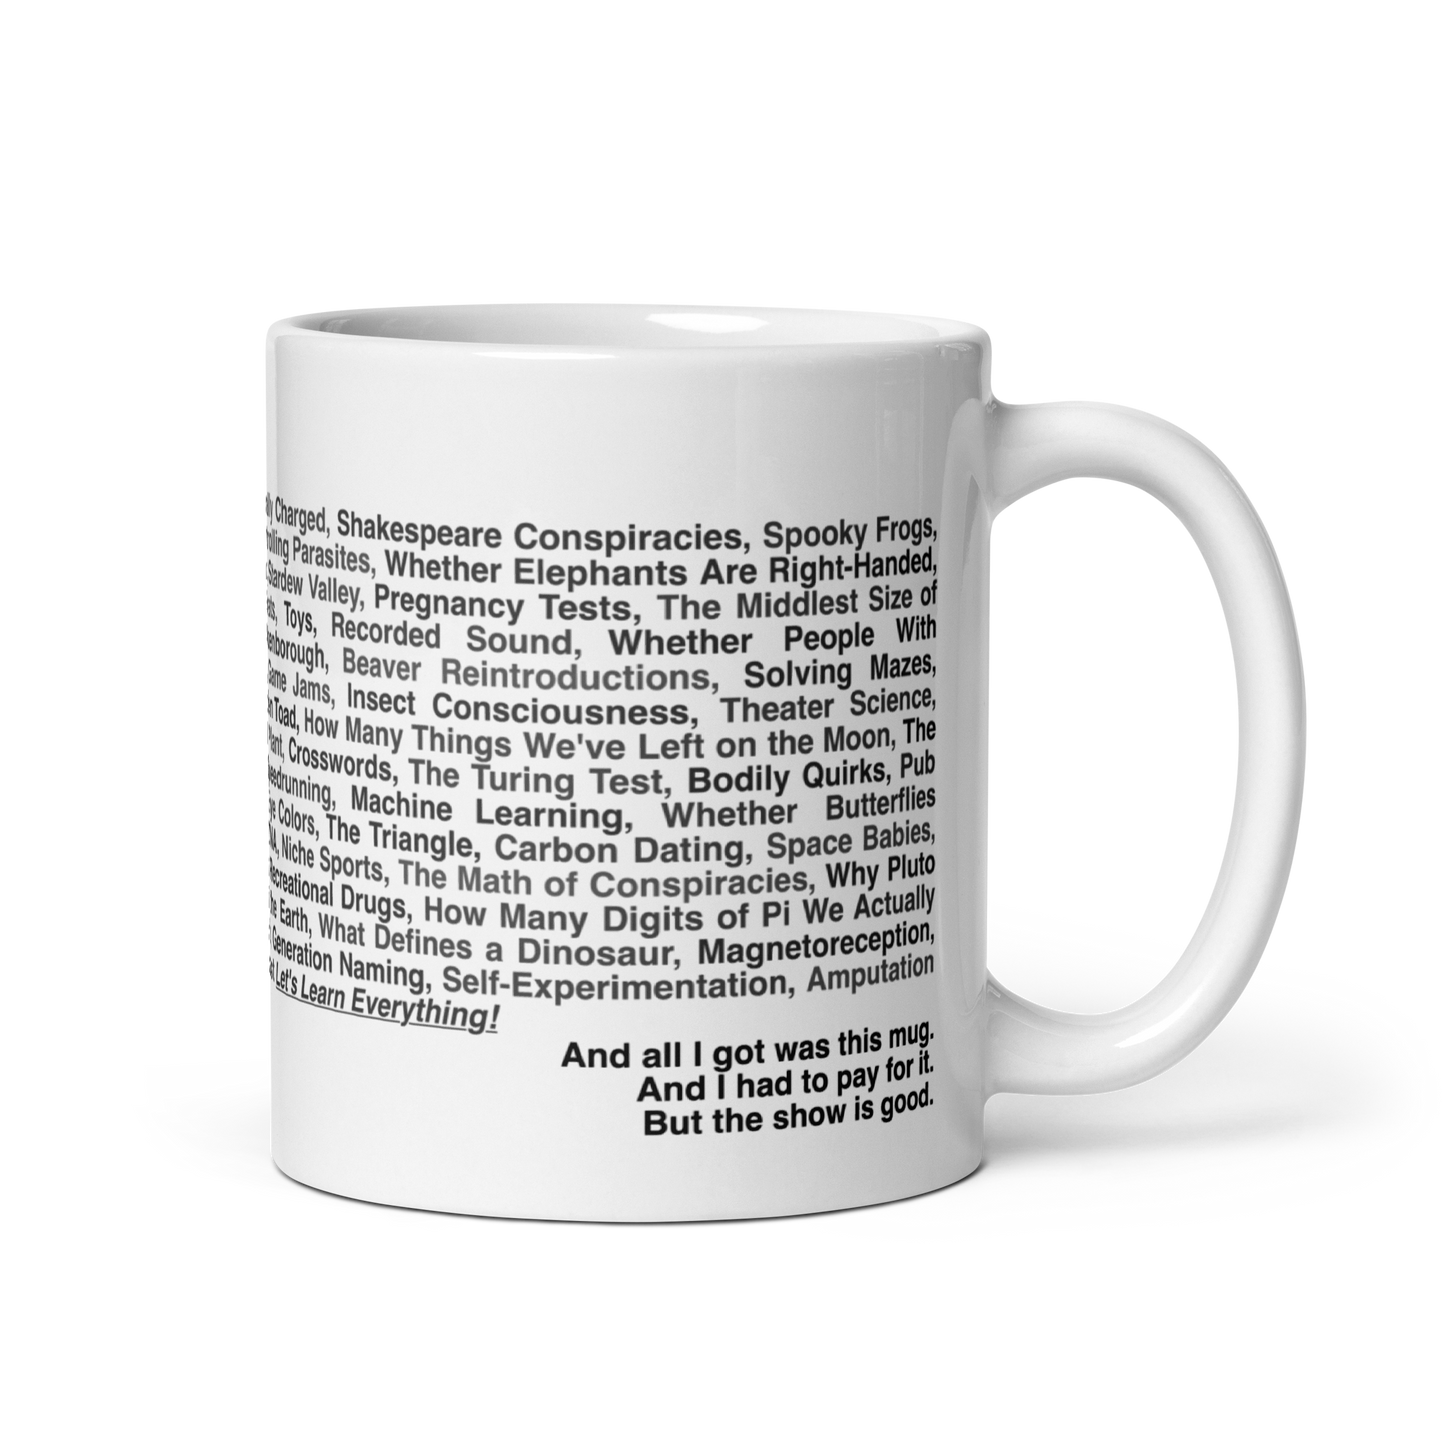 All Topics List mug